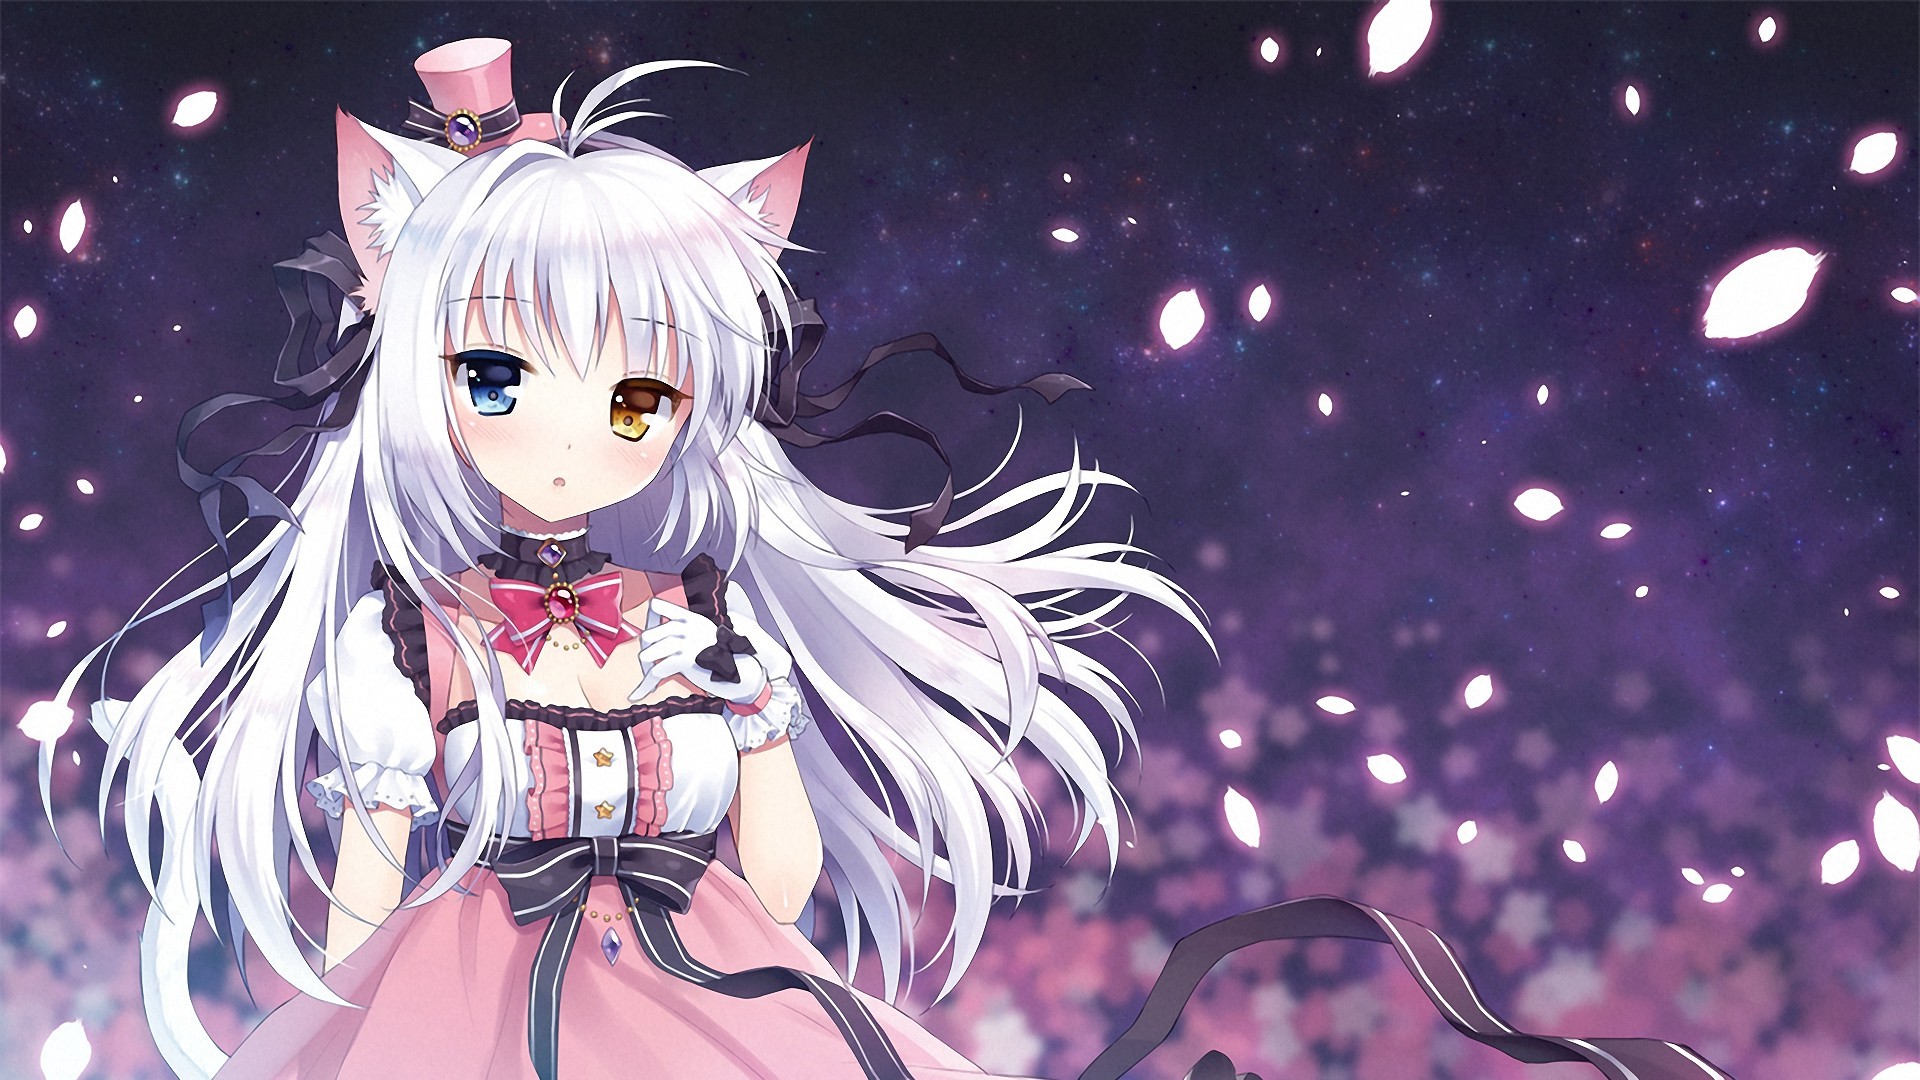 Manga Girl Wallpaper Anime Cat Girl Background 70238 Hd